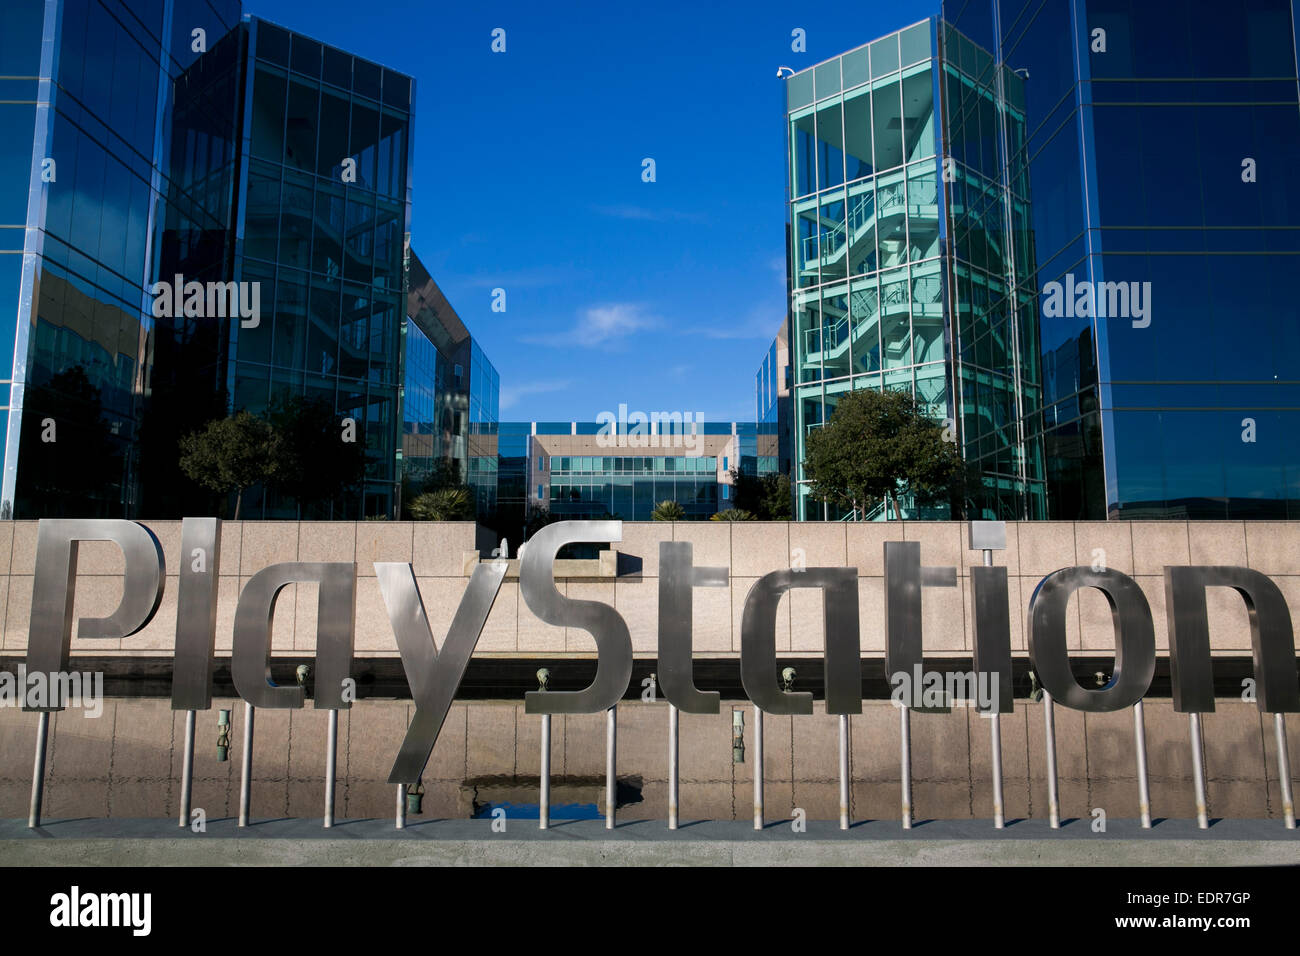 La sede centrale di Sony Computer Entertainment America (SCEA), produttore di giochi per PlayStation console, a Foster City, Califor Foto Stock